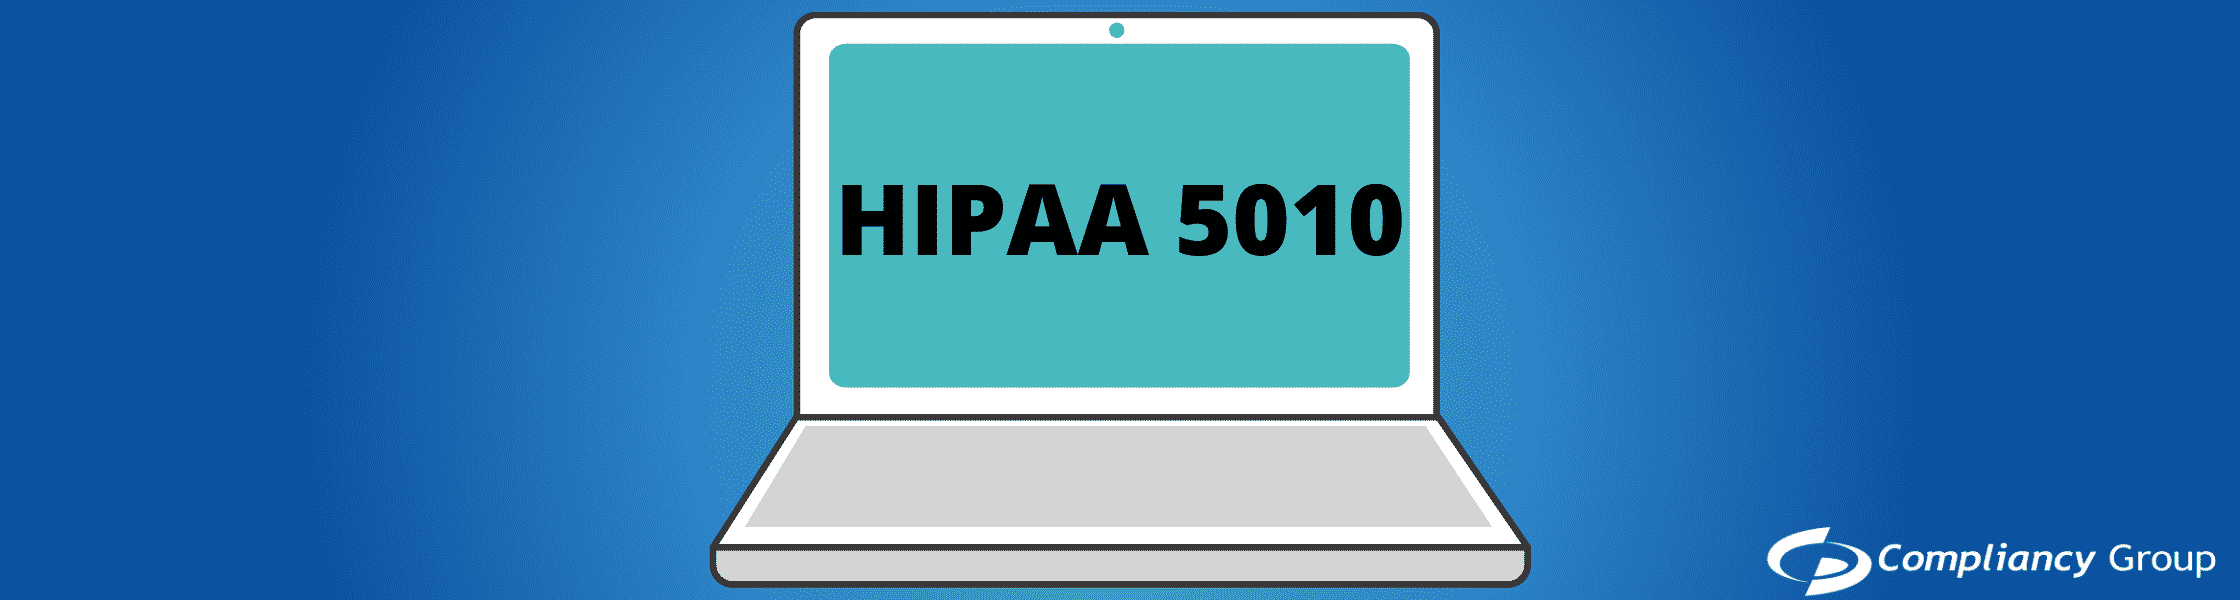 HIPAA 5010